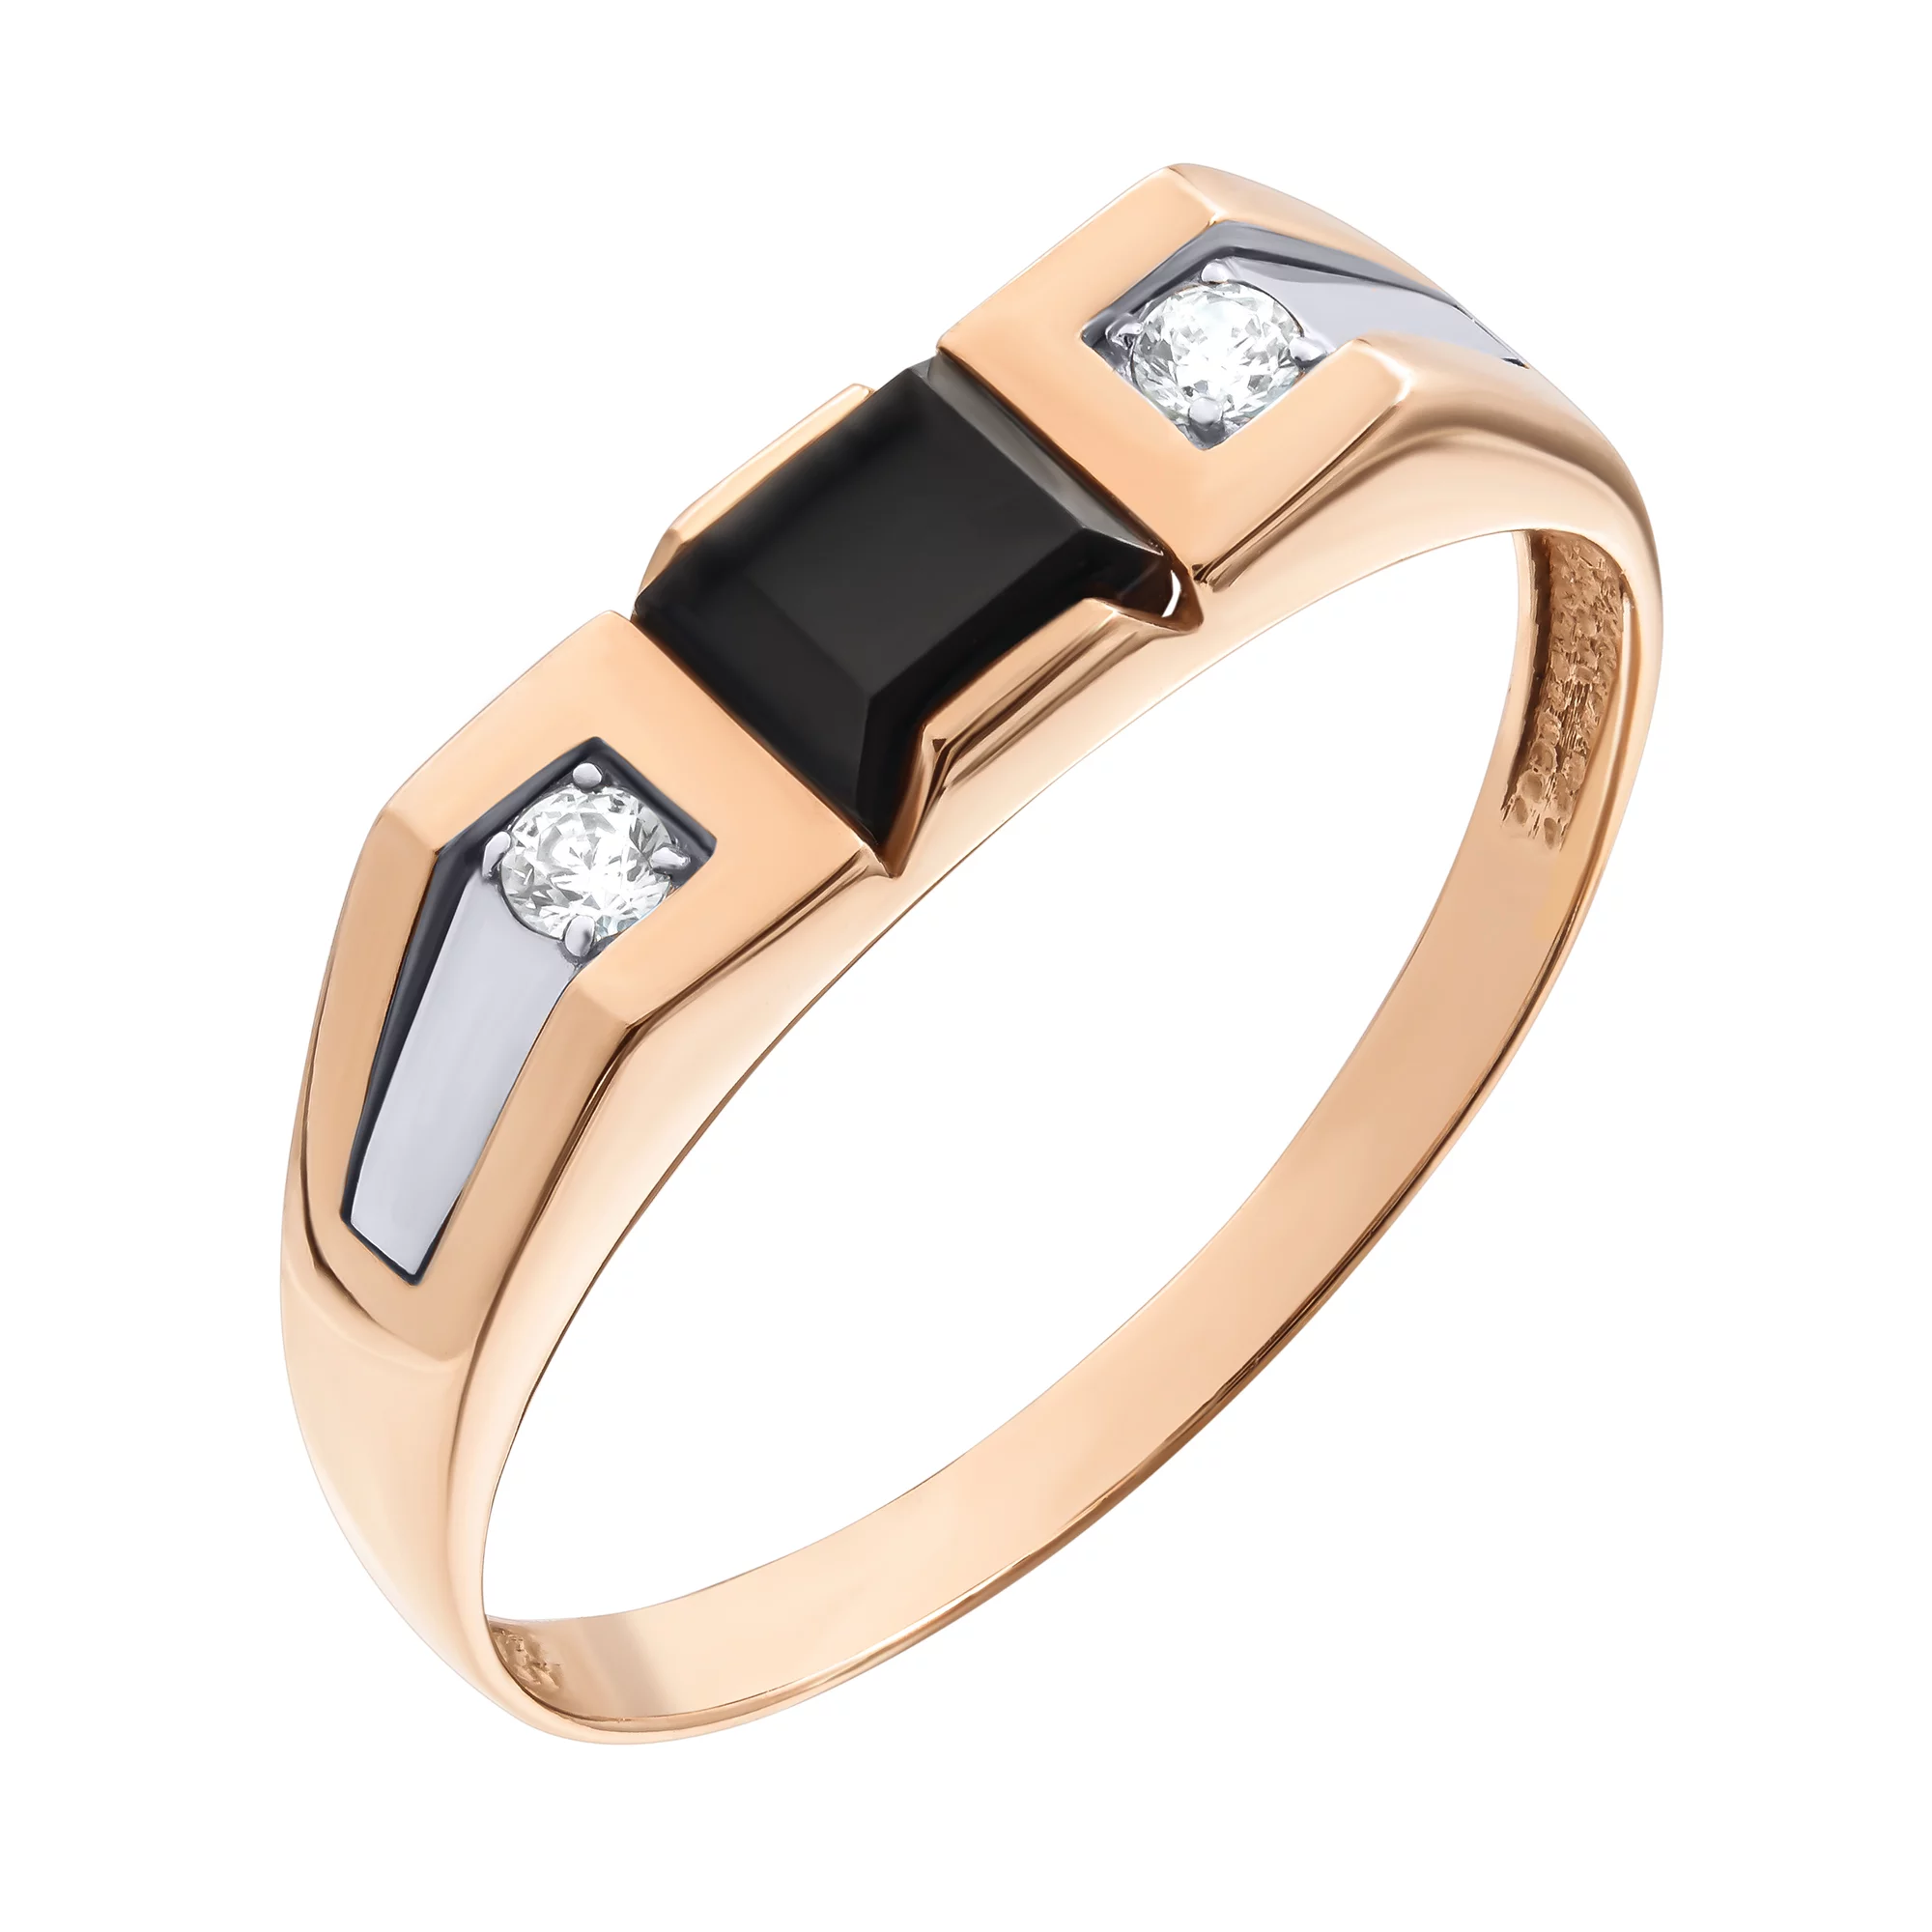 Перстень из комбинированного золота с ониксом и фианитом. Артикул 80629-он: цена, отзывы, фото – купить в интернет-магазине AURUM